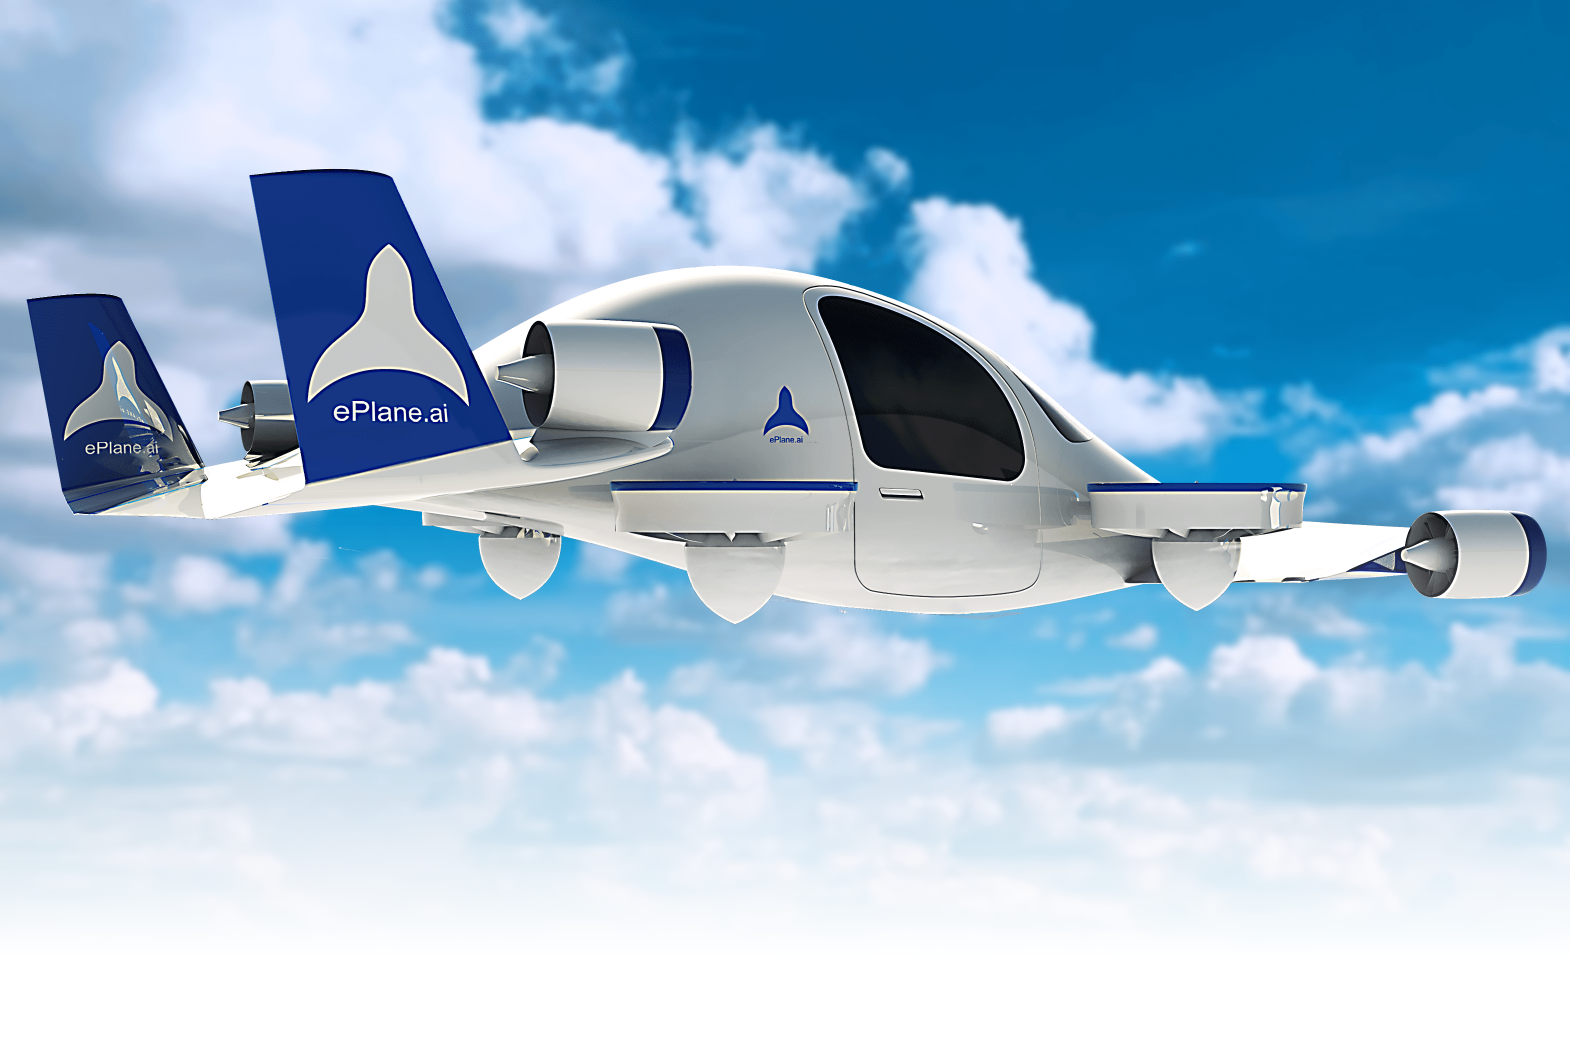 El fundador de ePlane ha declarado que la empresa tiene previsto presentar el primer prototipo de taxi aéreo a finales de 2024 y comercializarlo a gran escala en la India en 2027.